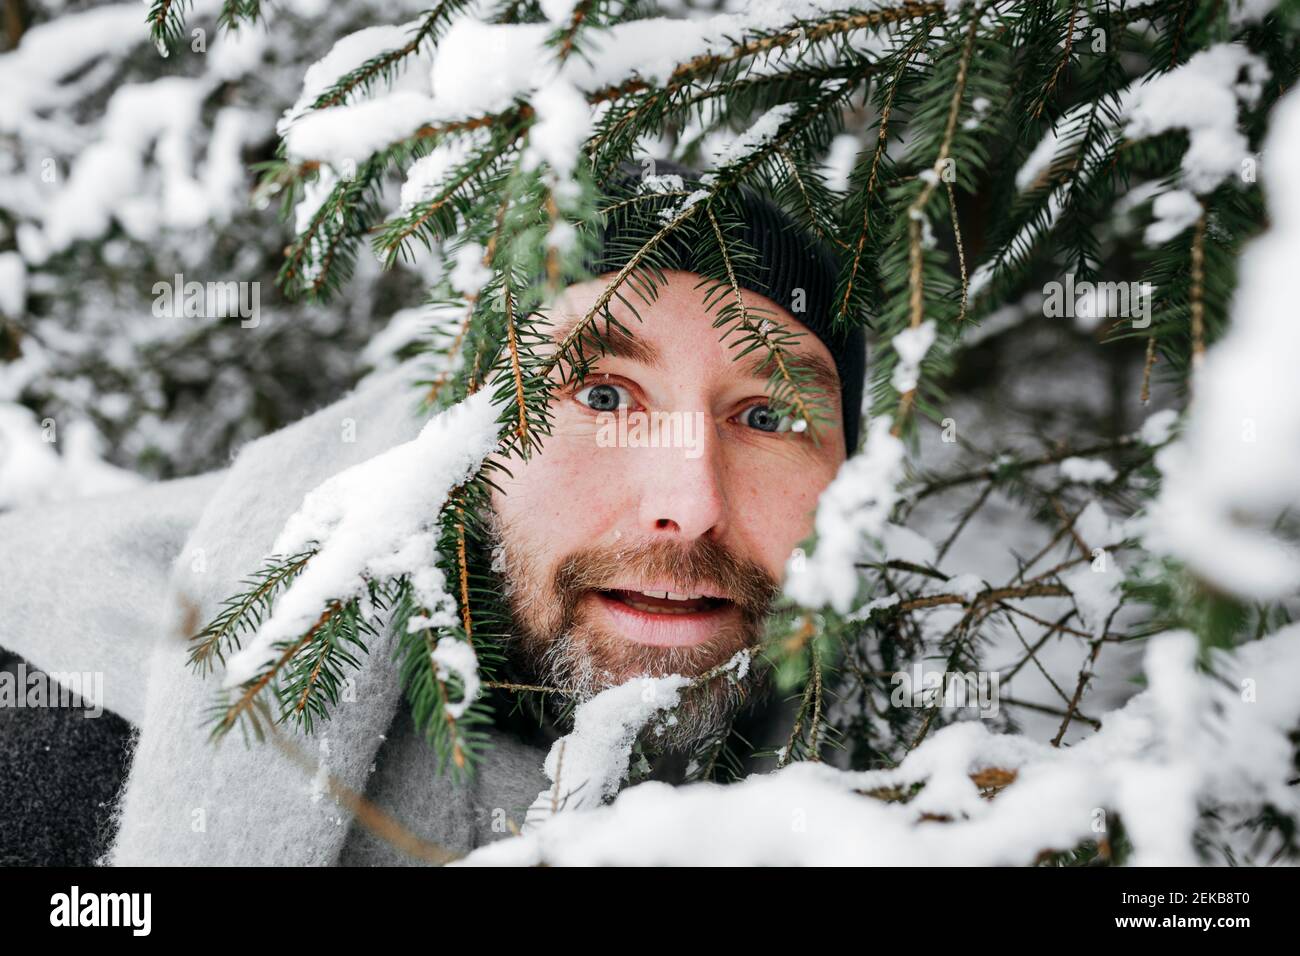 Curieux homme regardant à travers des brindilles de pin couvertes de neige Banque D'Images